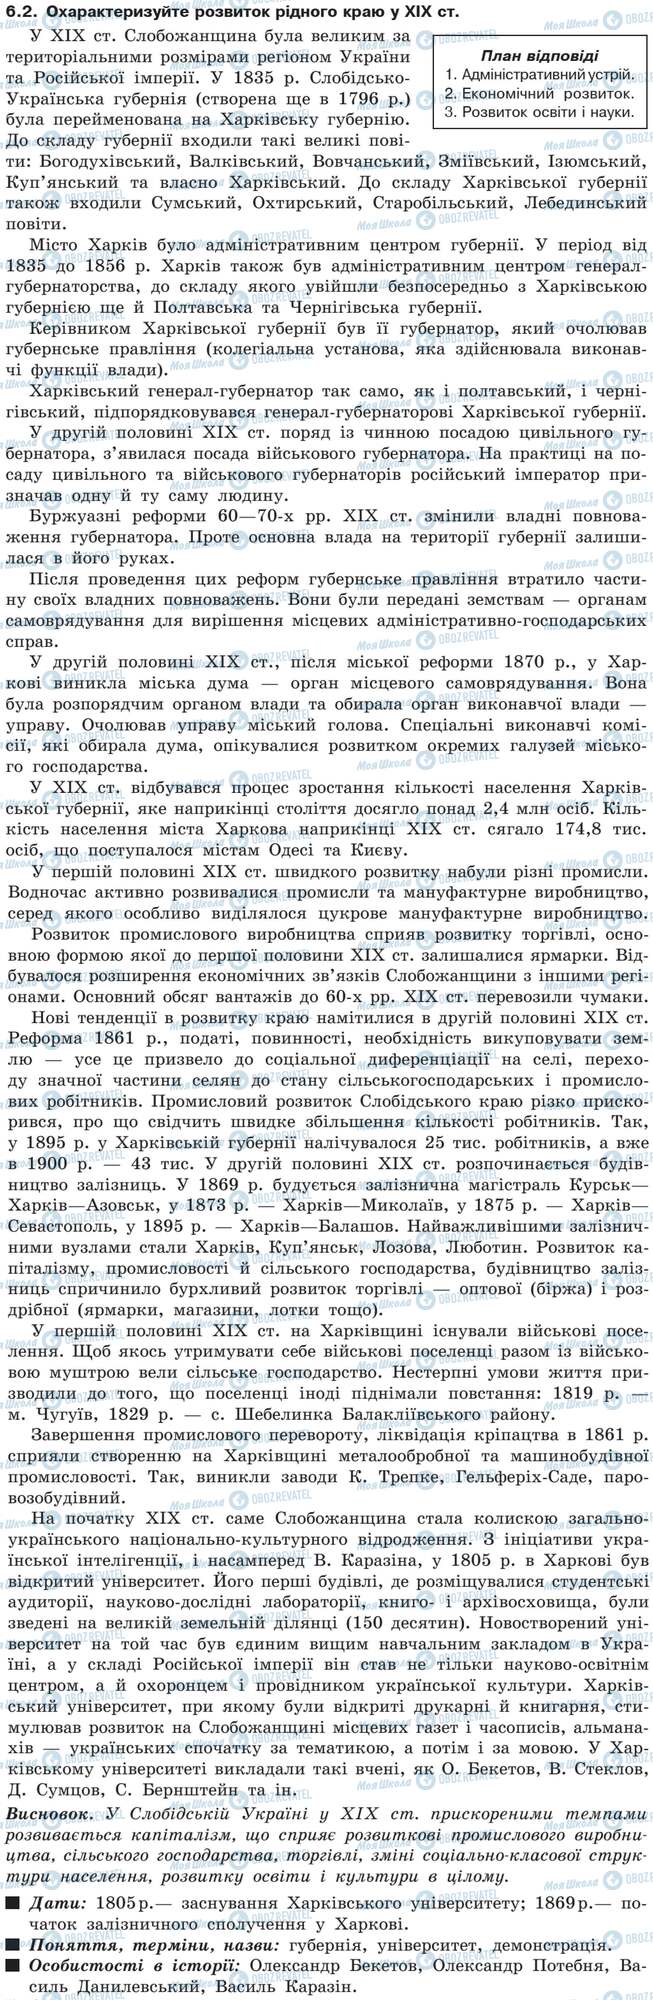 ДПА Історія України 9 клас сторінка 6.2